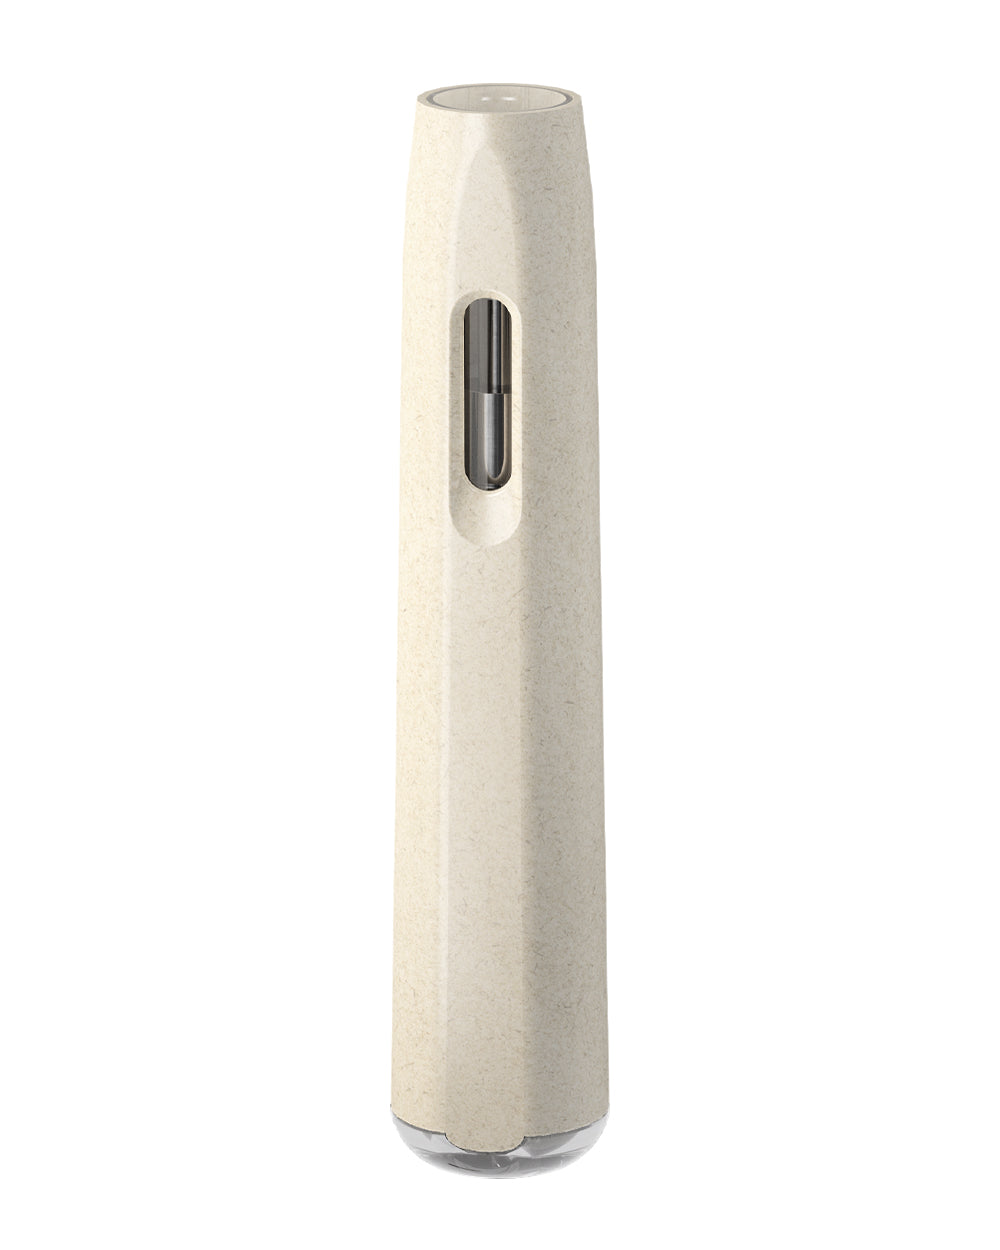 AVD | Stem White Hemp Plastic Blend Rechargeable Disposable Vape Pen w/ Clear Vortex Mouthpiece | 1mL - 220 mAh  - 2